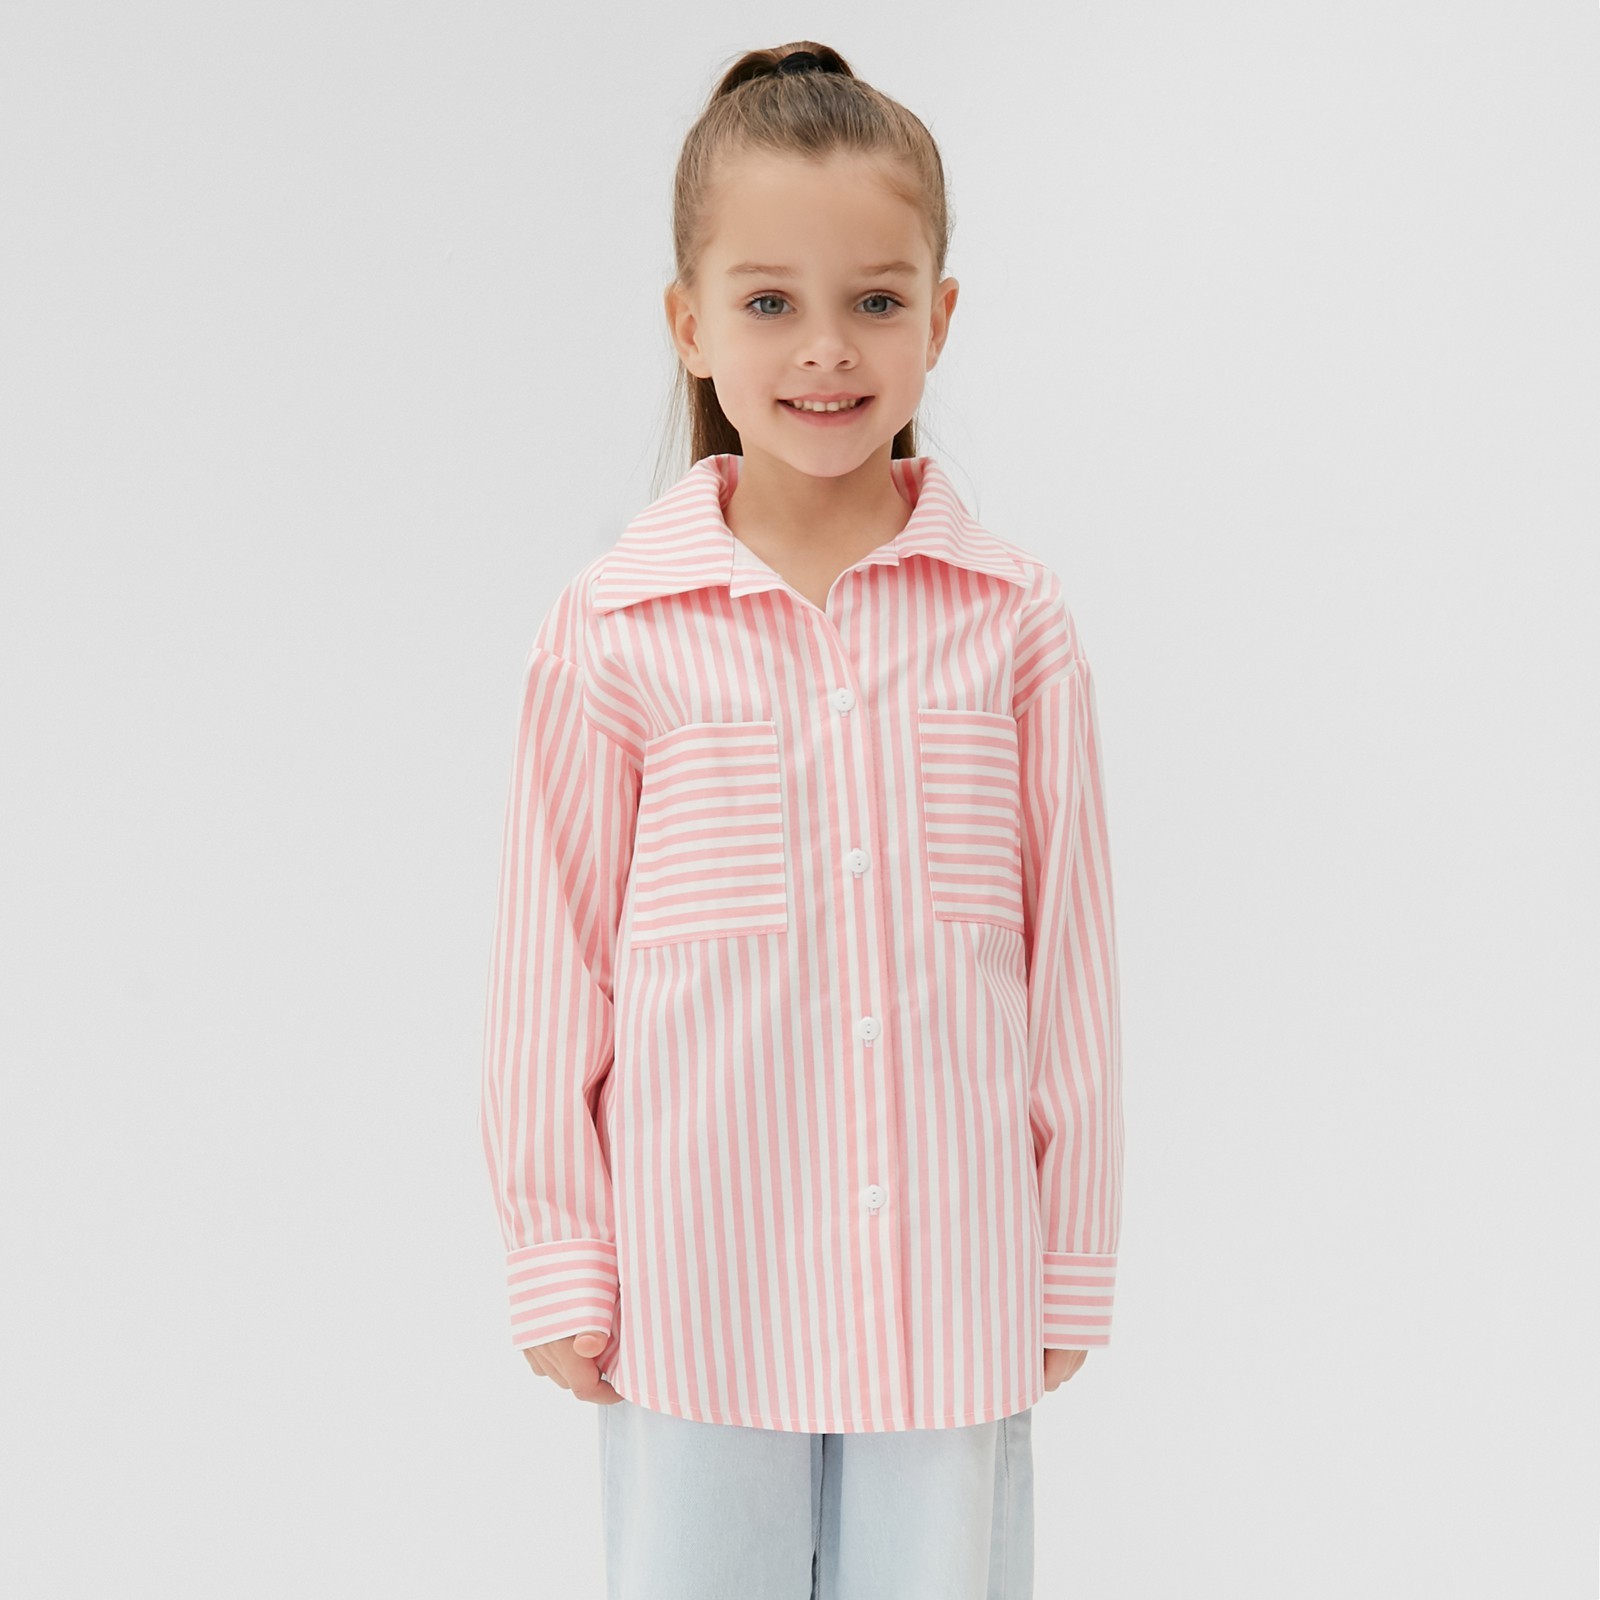 Рубашка детская Кидс, Белый, Розовый, 110 рубашка детская кидс белый розовый 110